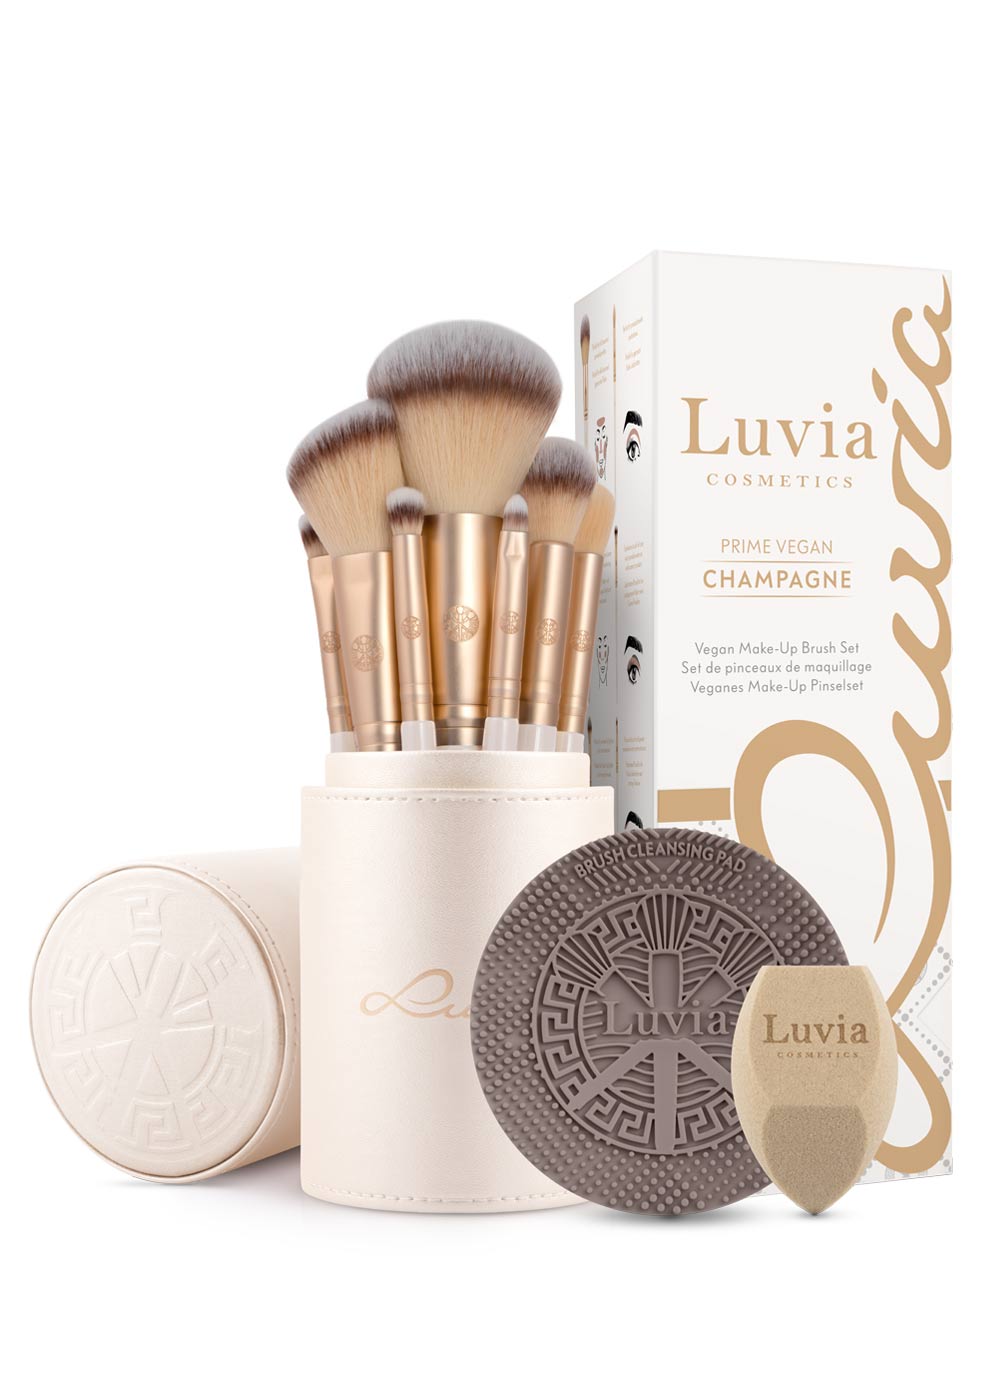 Luvia Champagne Vegan Cosmetics – Prime